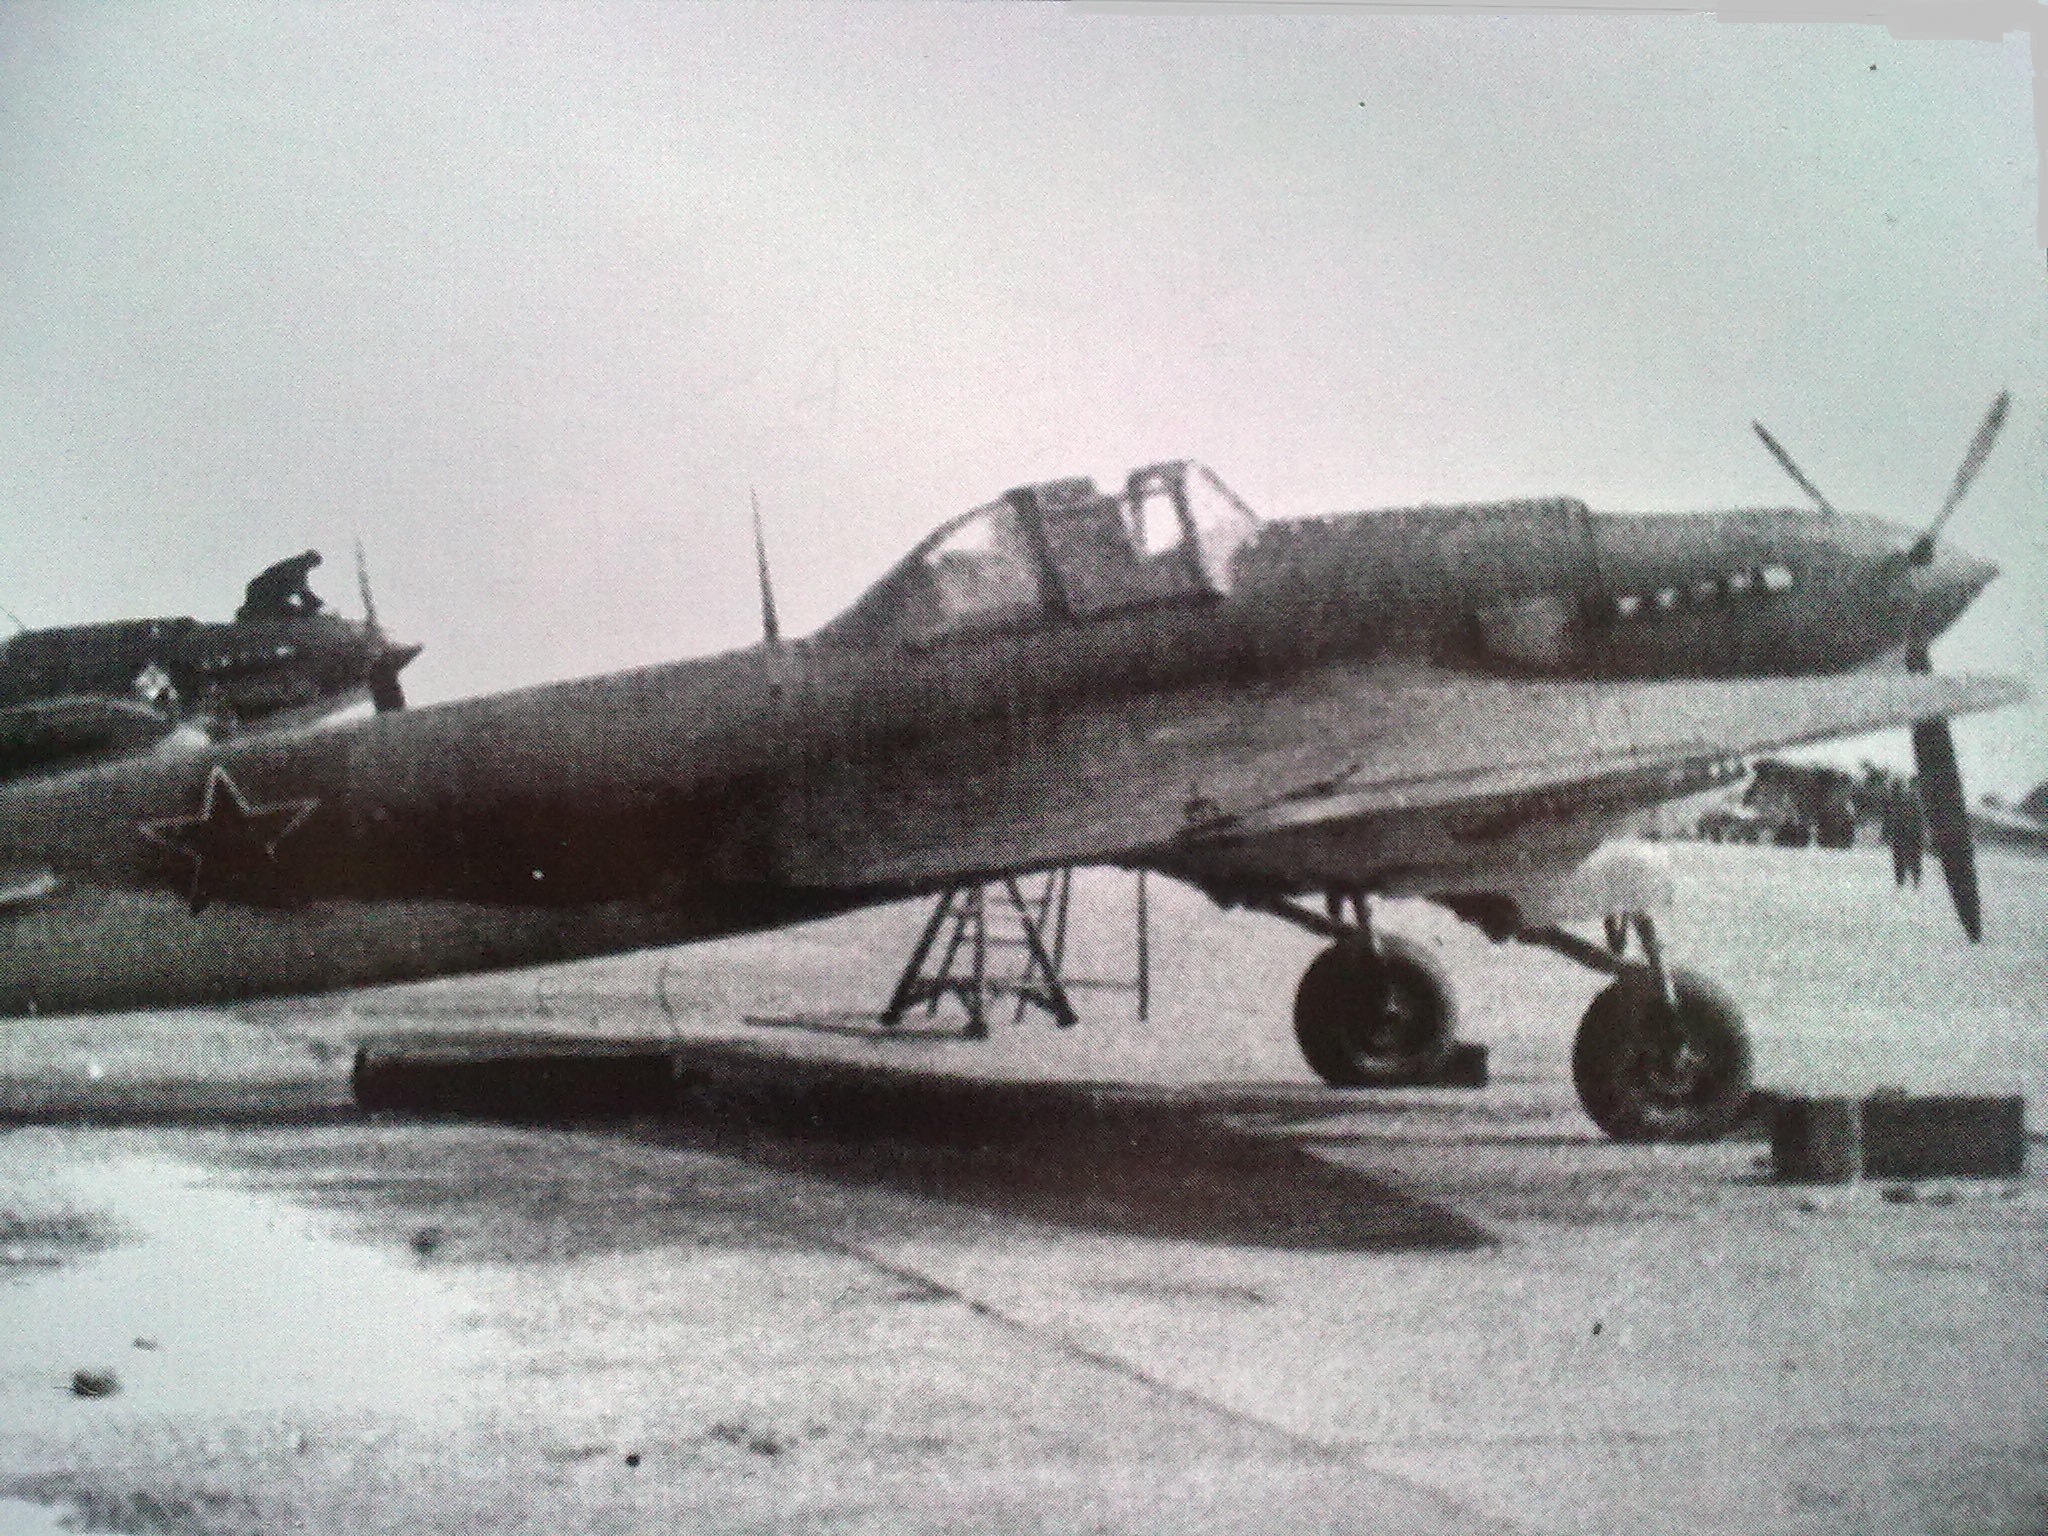 0511-Il-2 1.serie léto 41